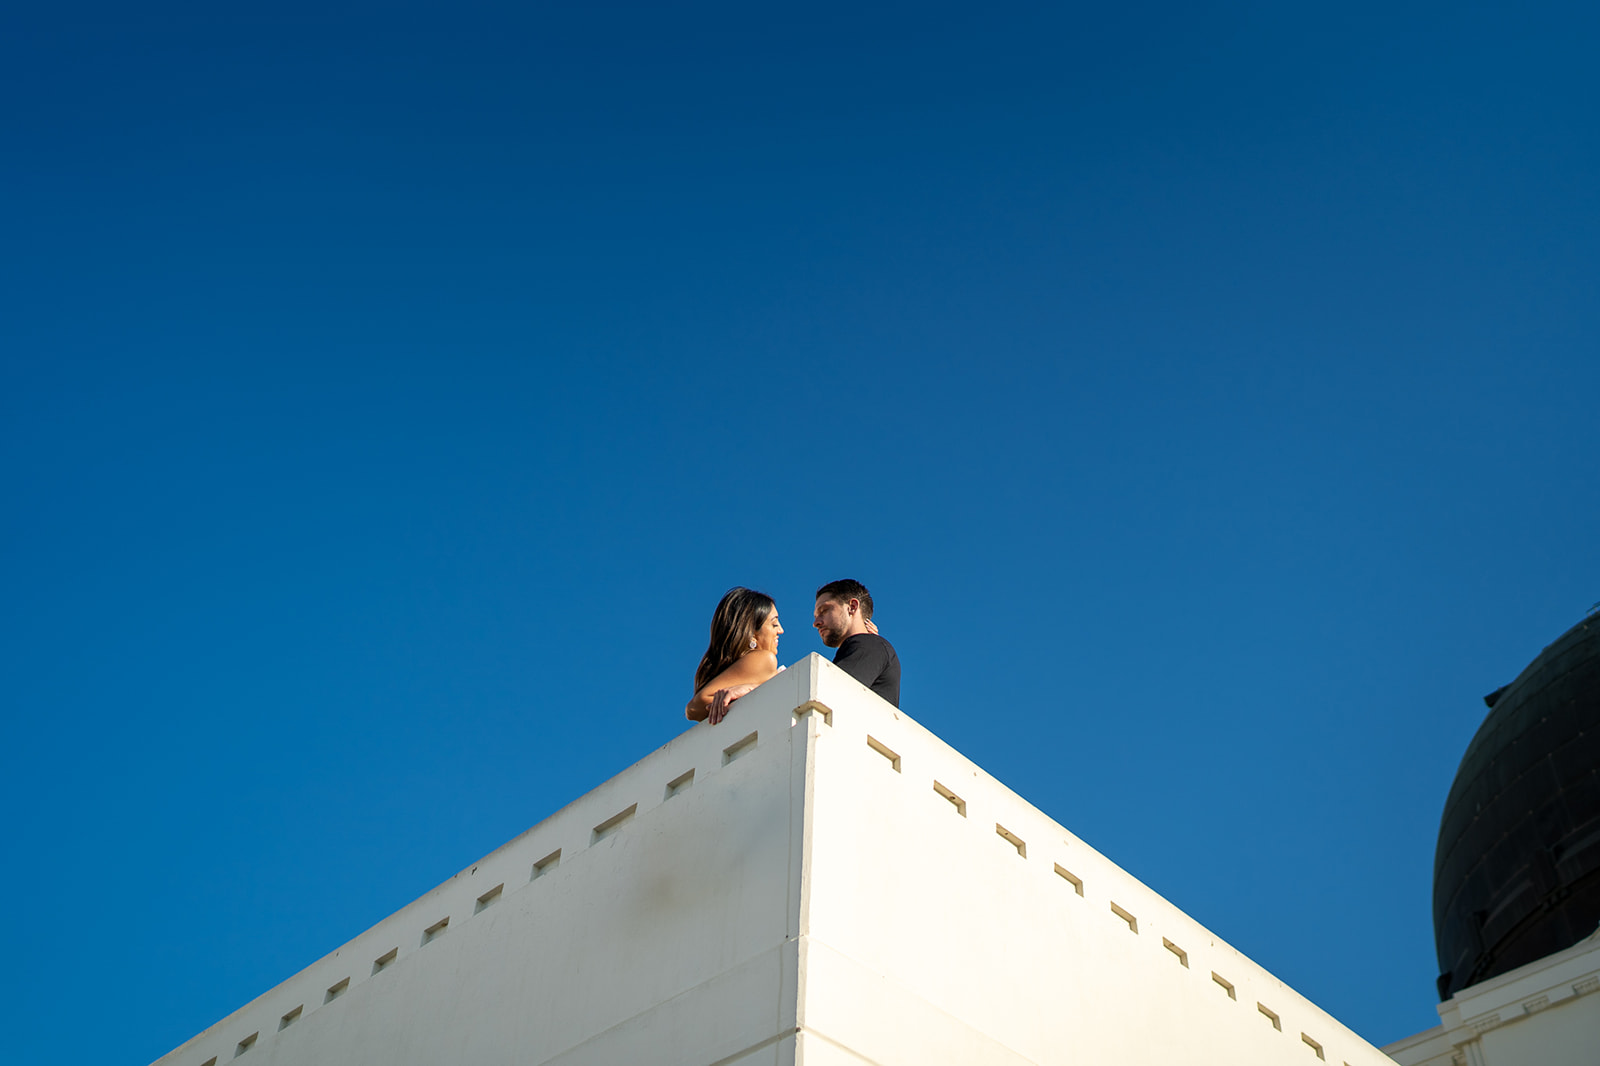 ThomasKim_photography Keywords: engagement, blue sky